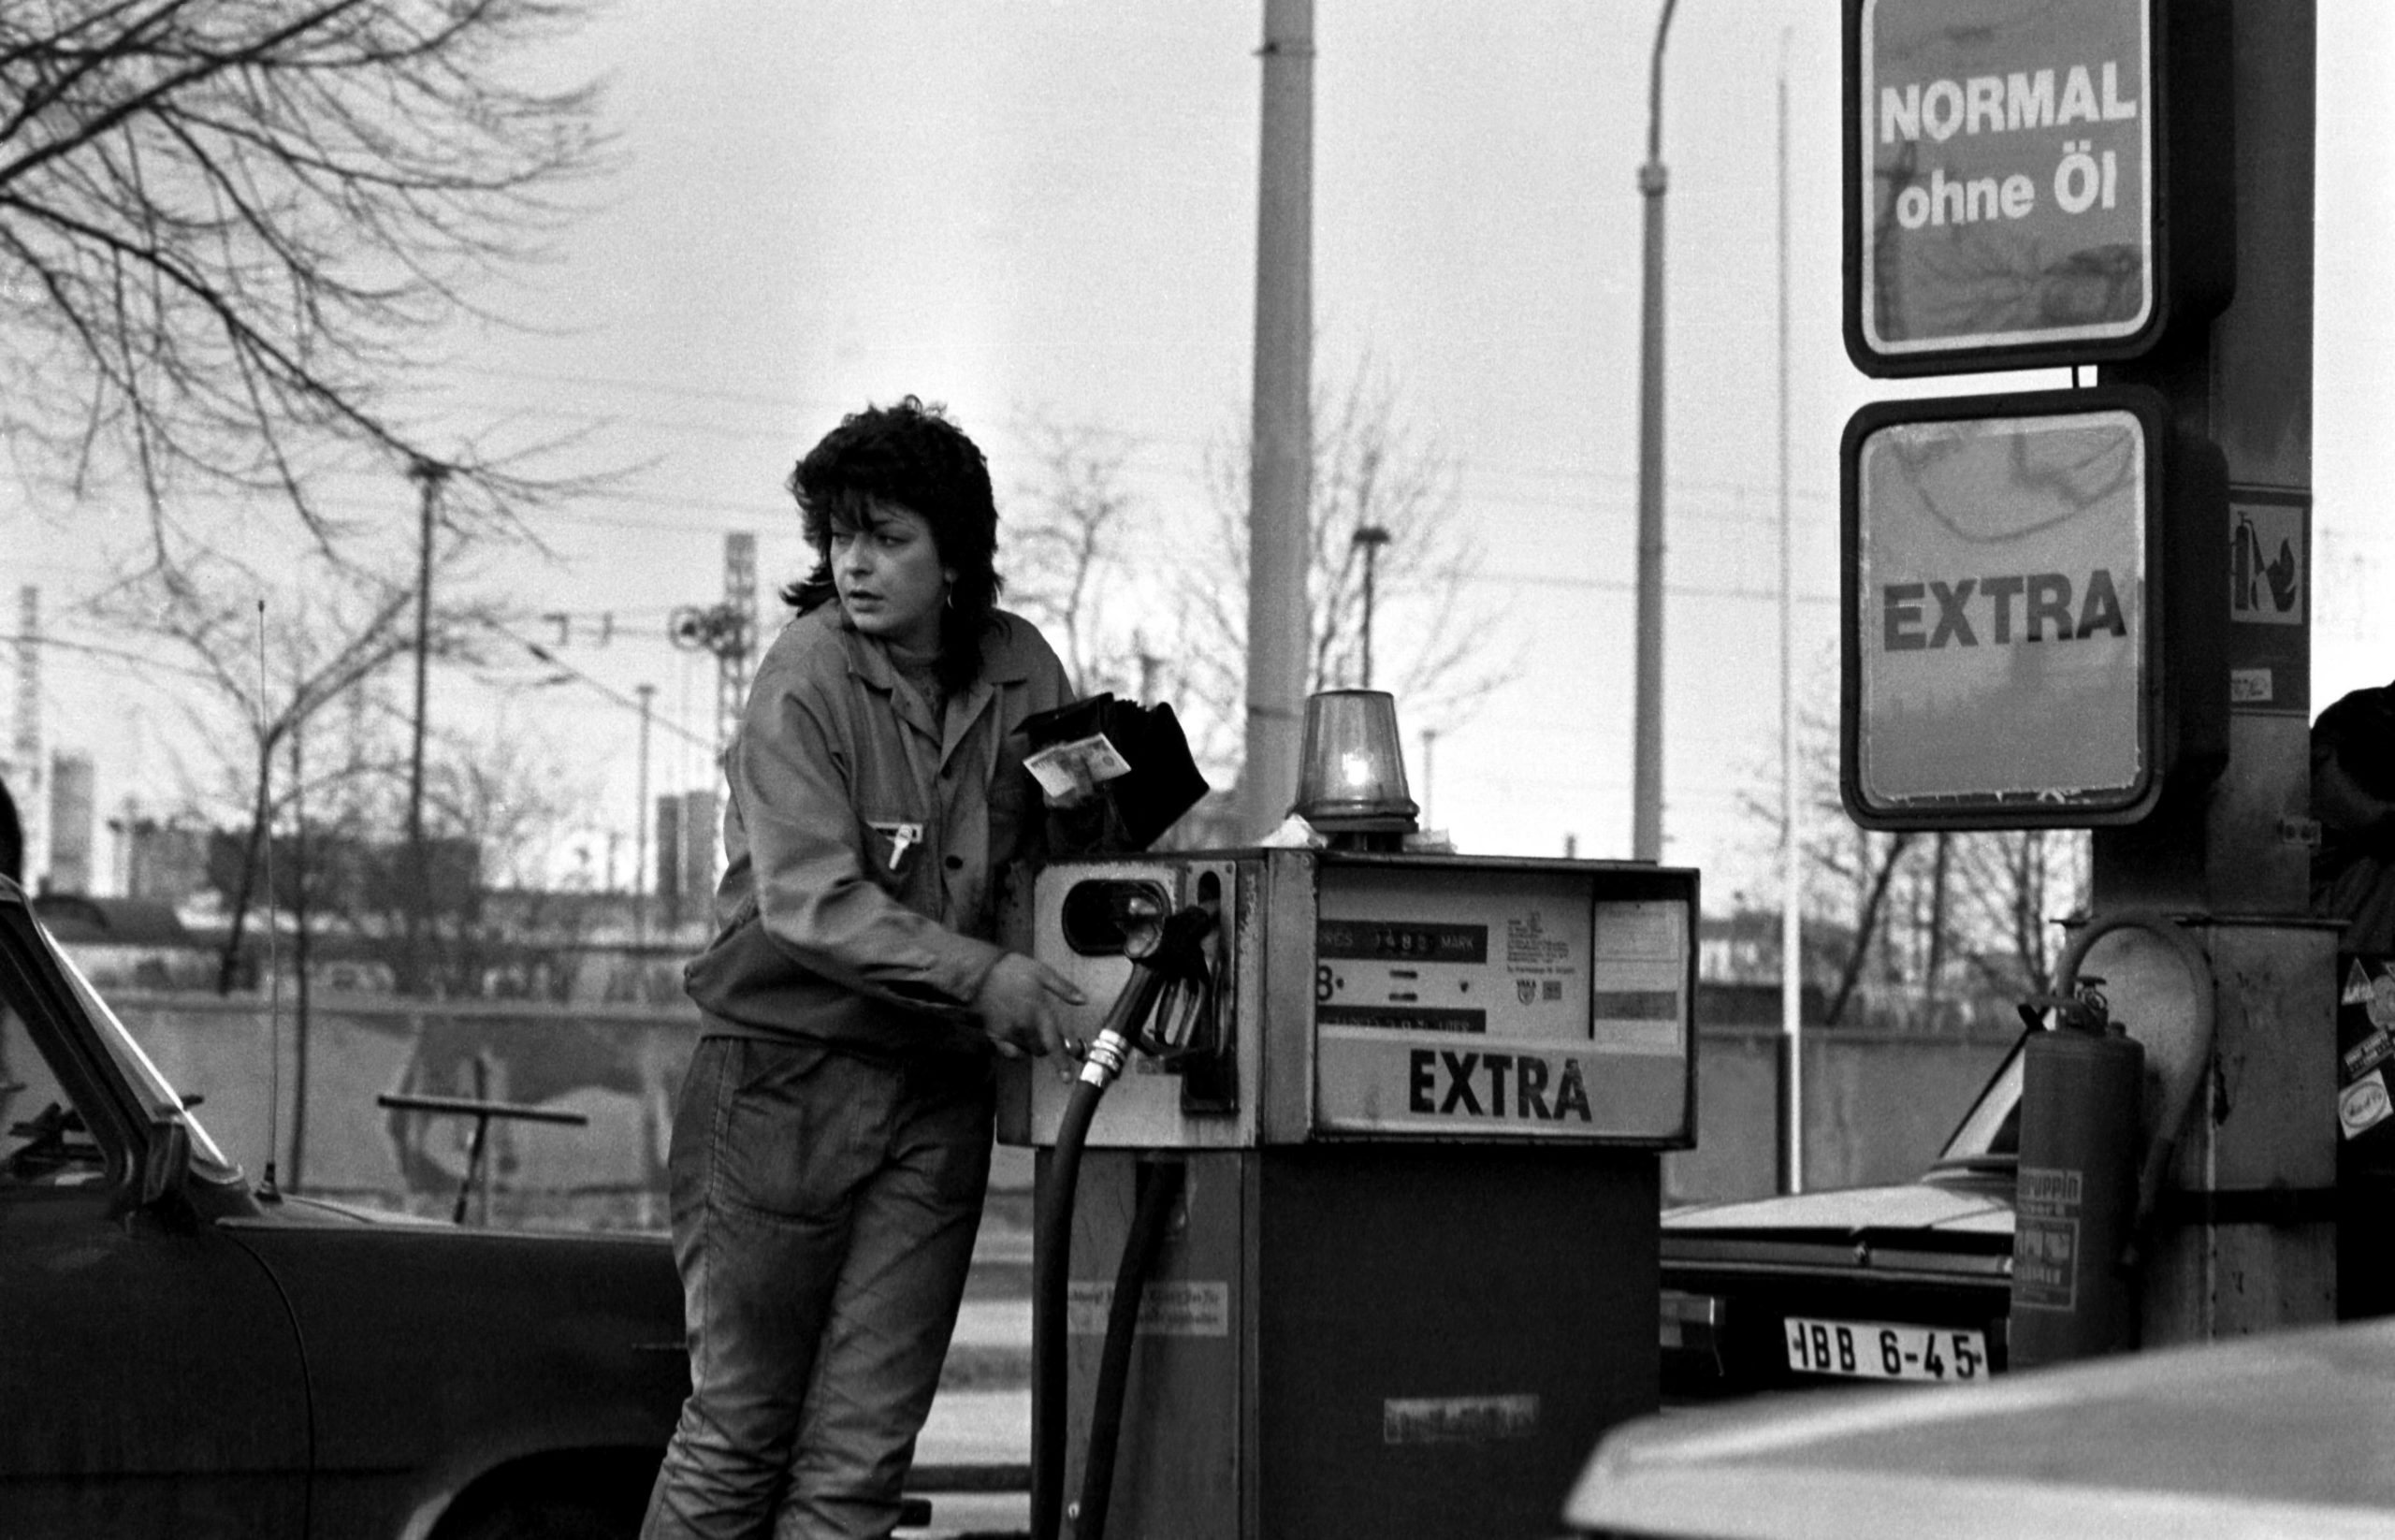 Tankwärtin an einer Minol Tankstelle, 1987. Foto: Imago/Christian Thiel